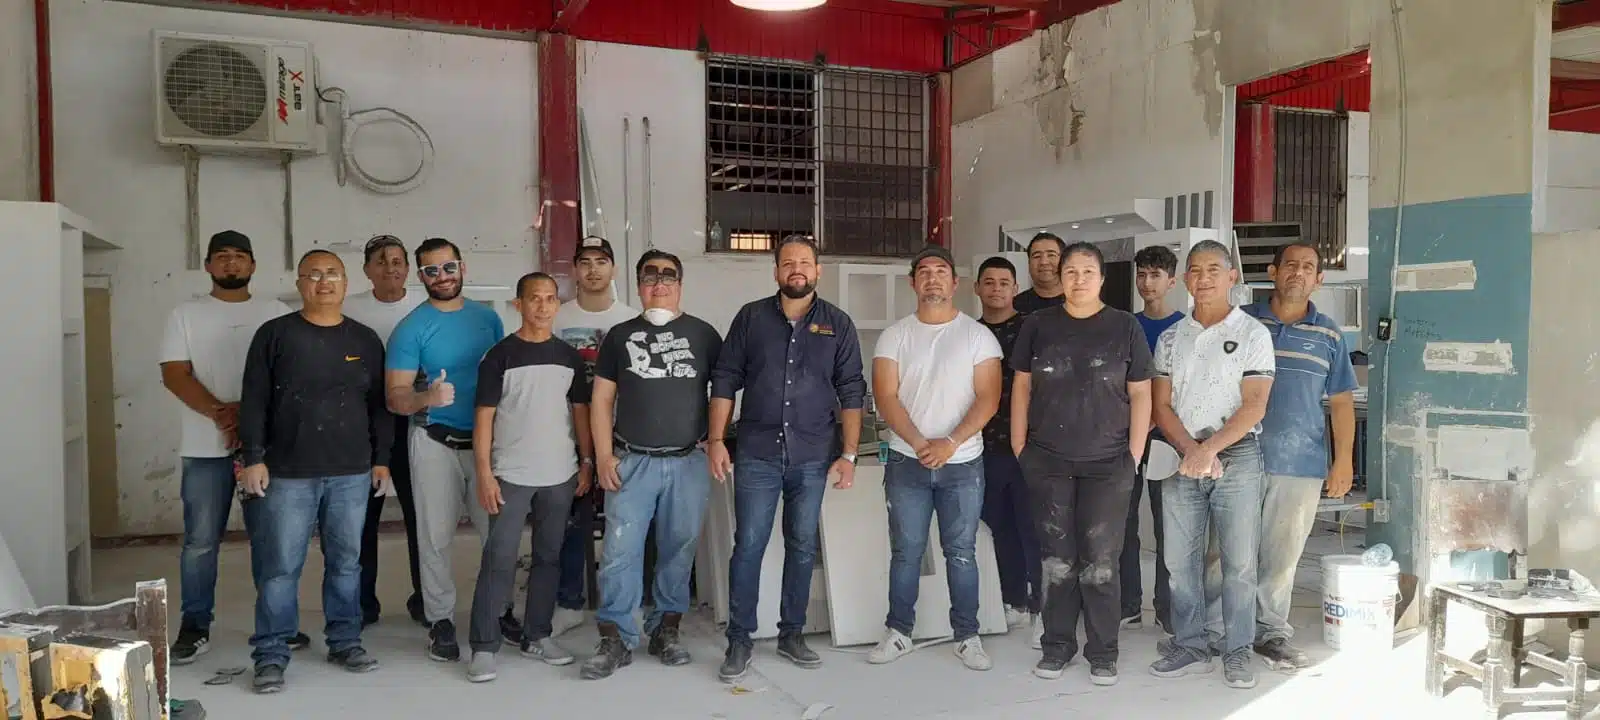 Pablo Yair Sillas Robledo junto a su equipo con quienes elabora productos a base de tablaroca